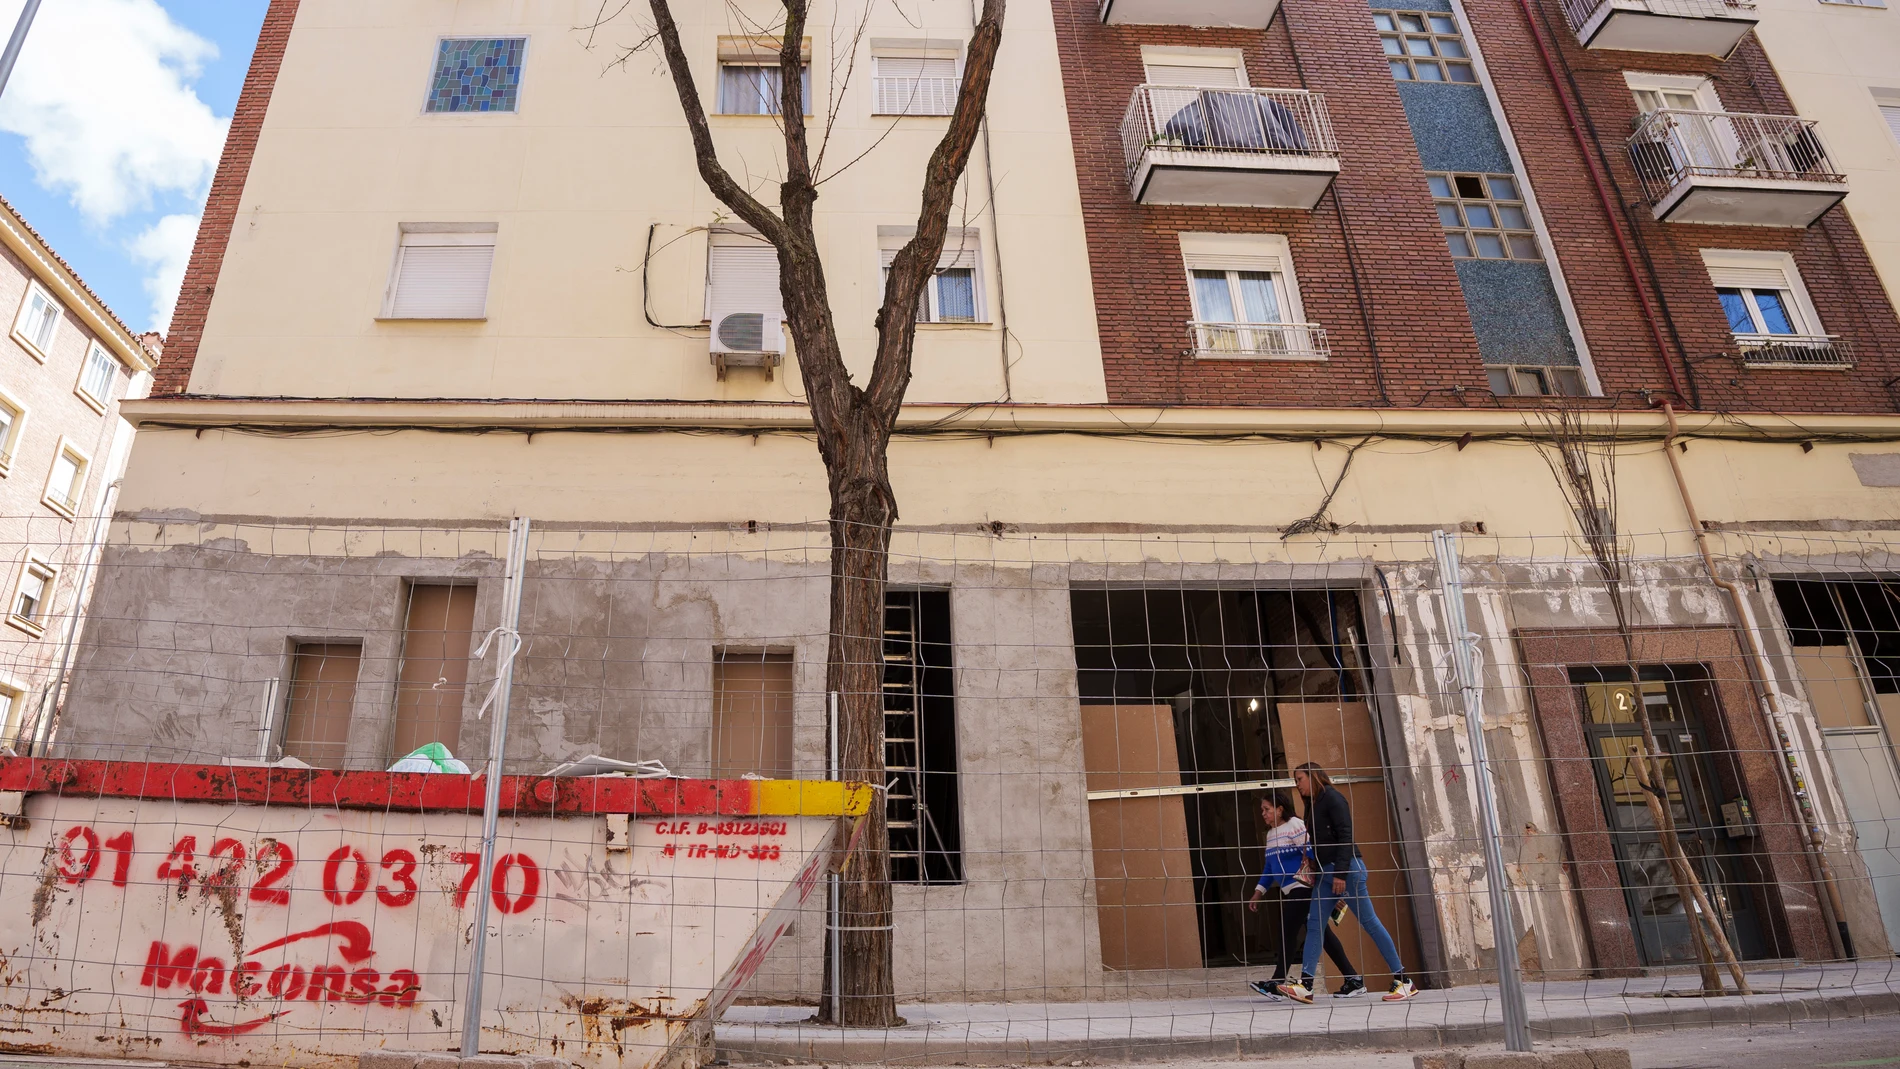 Locales que se convierten en viviendas en la Calle Martnez çlvarez 21David Jar